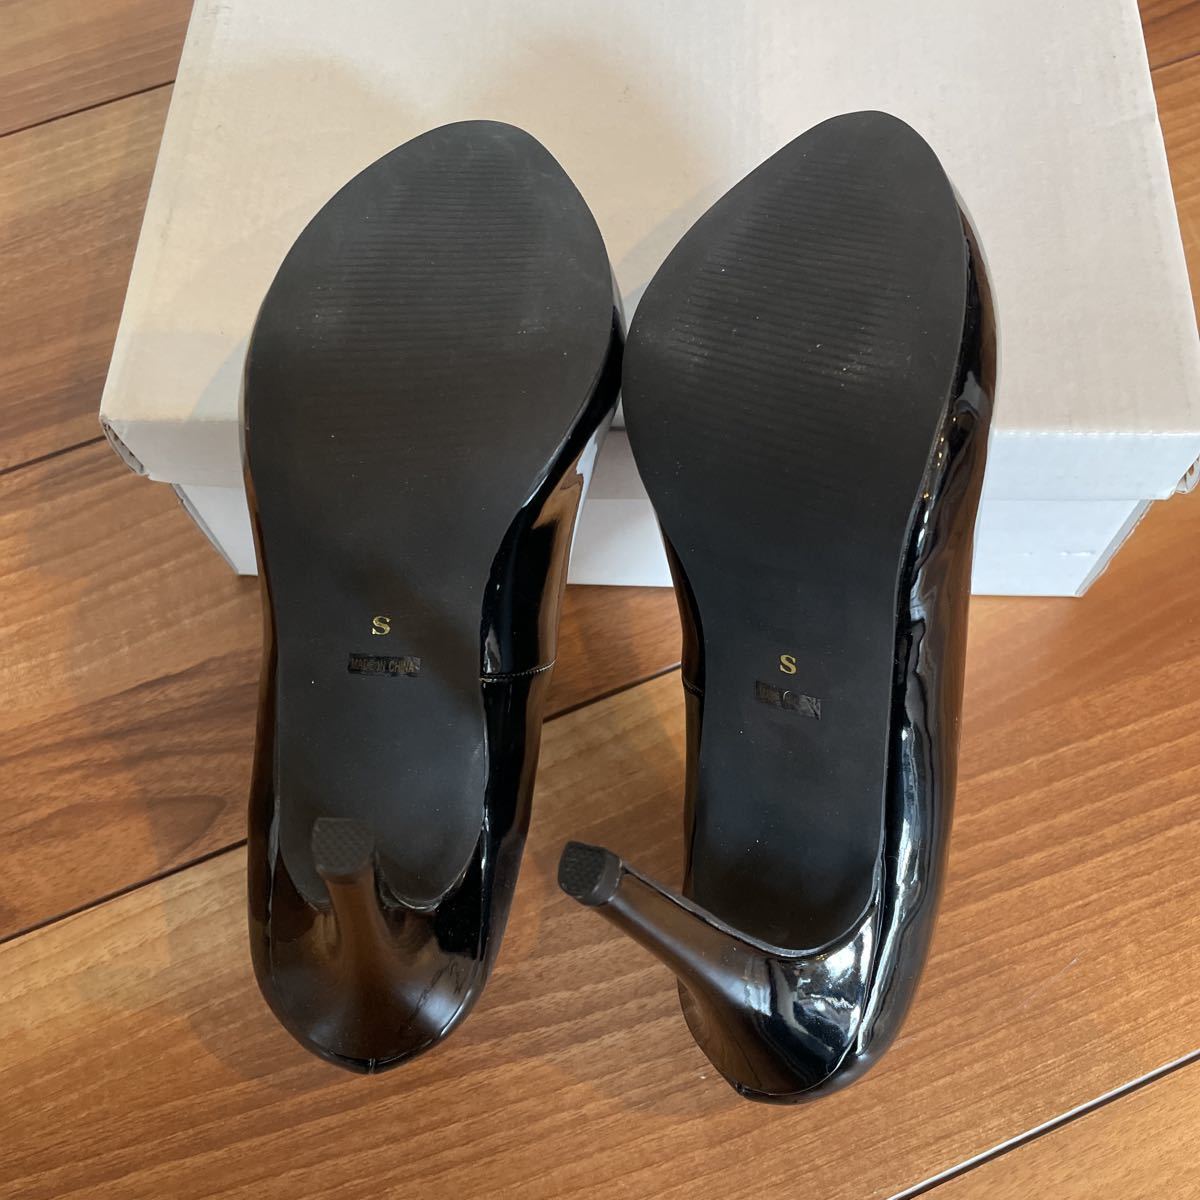  не использовался B чёрный S 22~22.5 cm URBAN RESEARCH Urban Research COUTURE MAISON эмаль туфли-лодочки женский обувь формальная обувь дешево 11